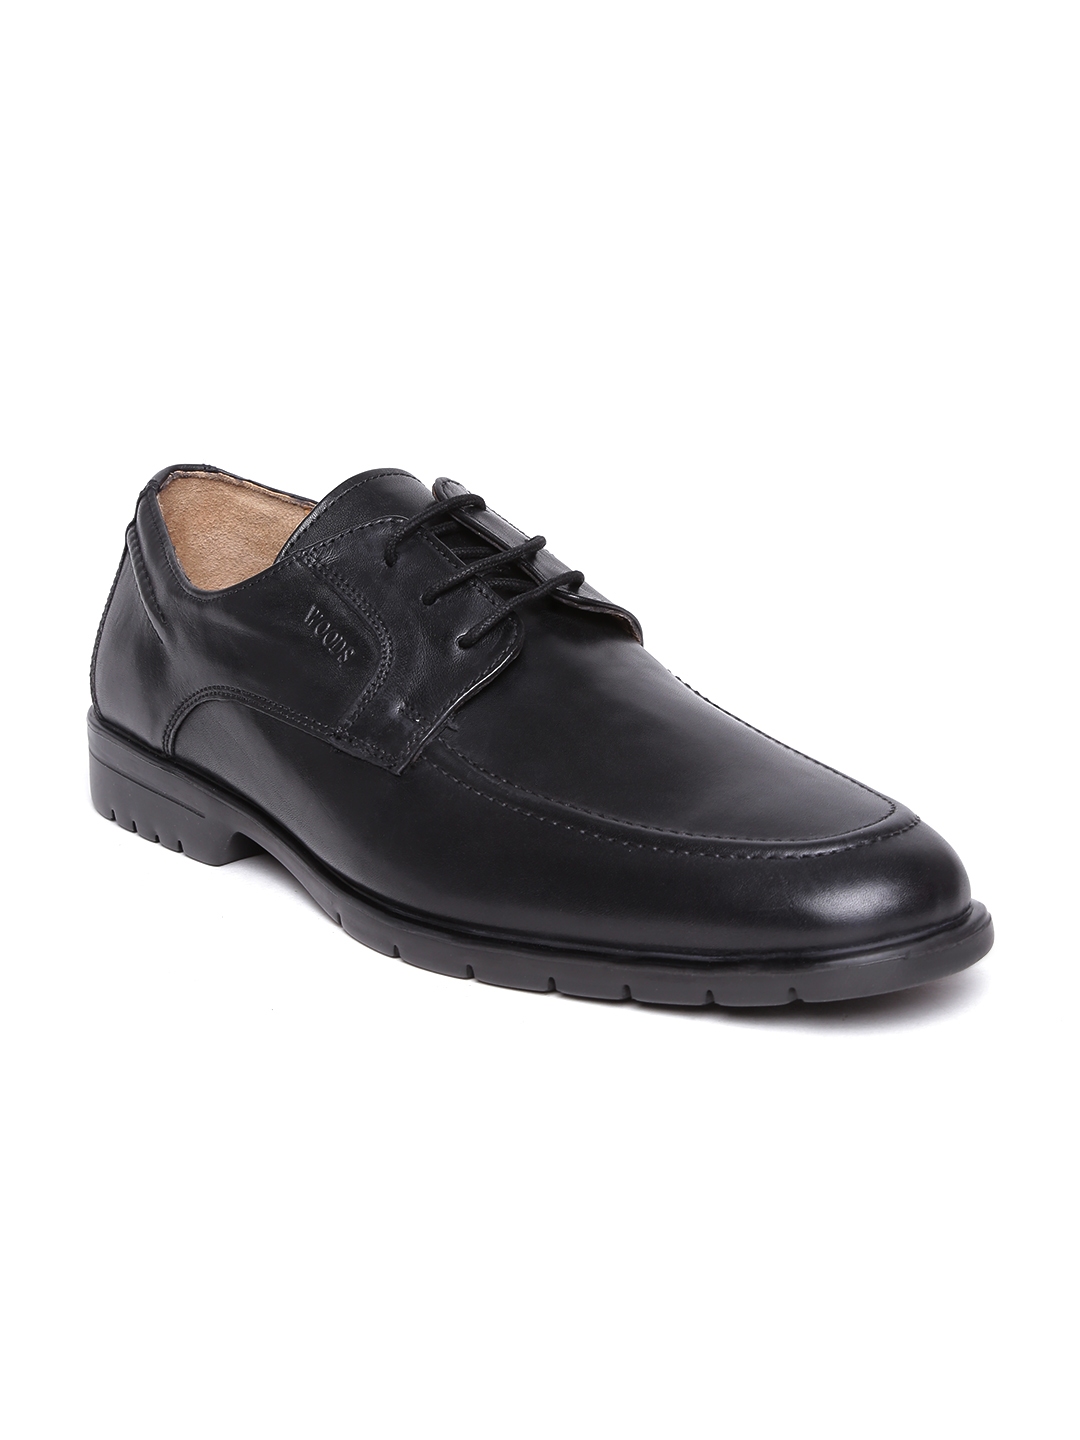 woods formal shoes black